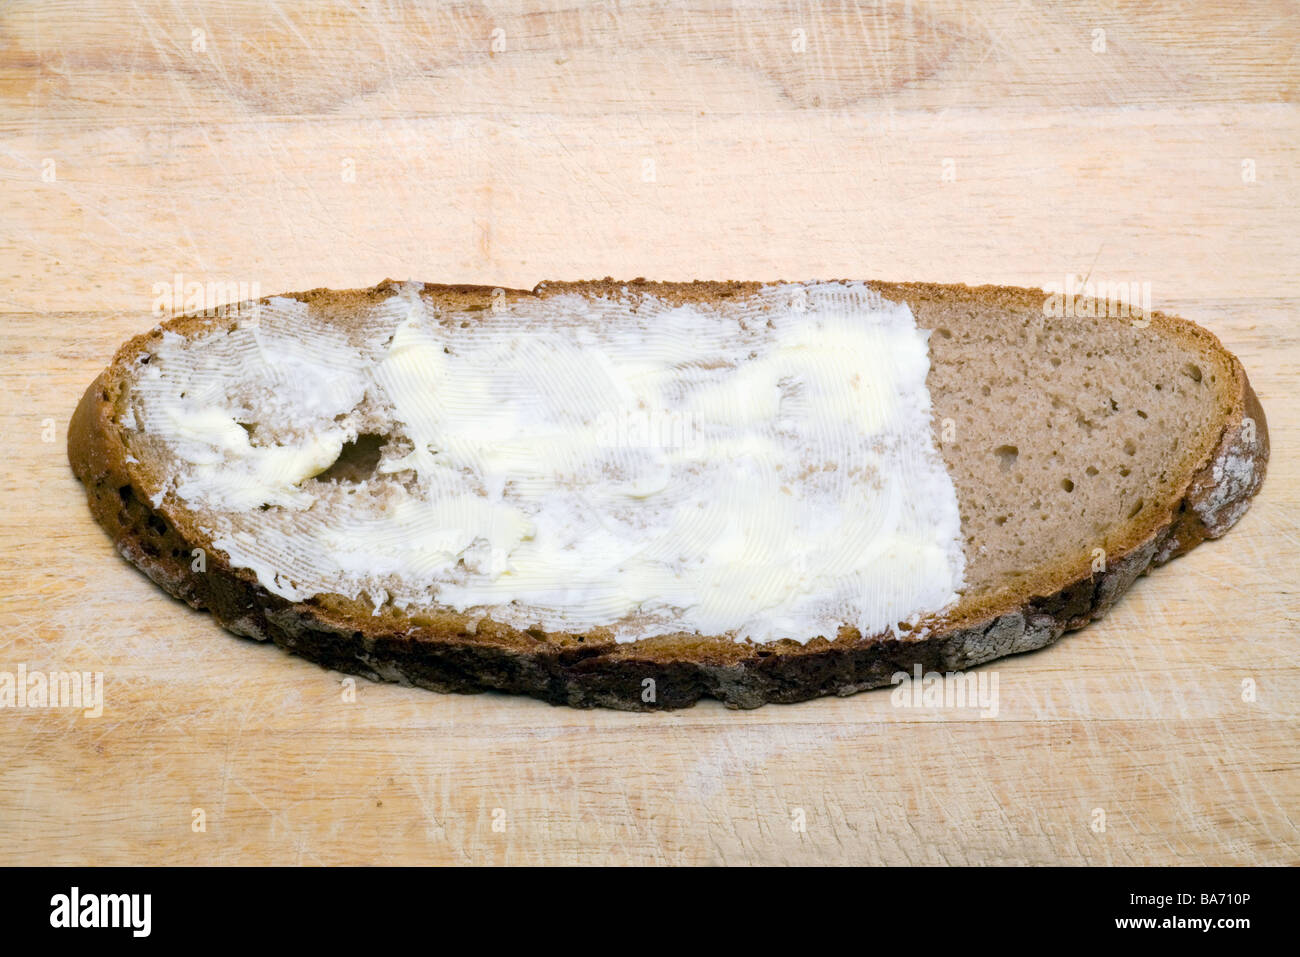 Brot-Datenträger verteilen Butter Essen Essen Grund Essen Sandwich Platte Ernährungskonzept fehlt teilweise wenig unzureichend Stockfoto